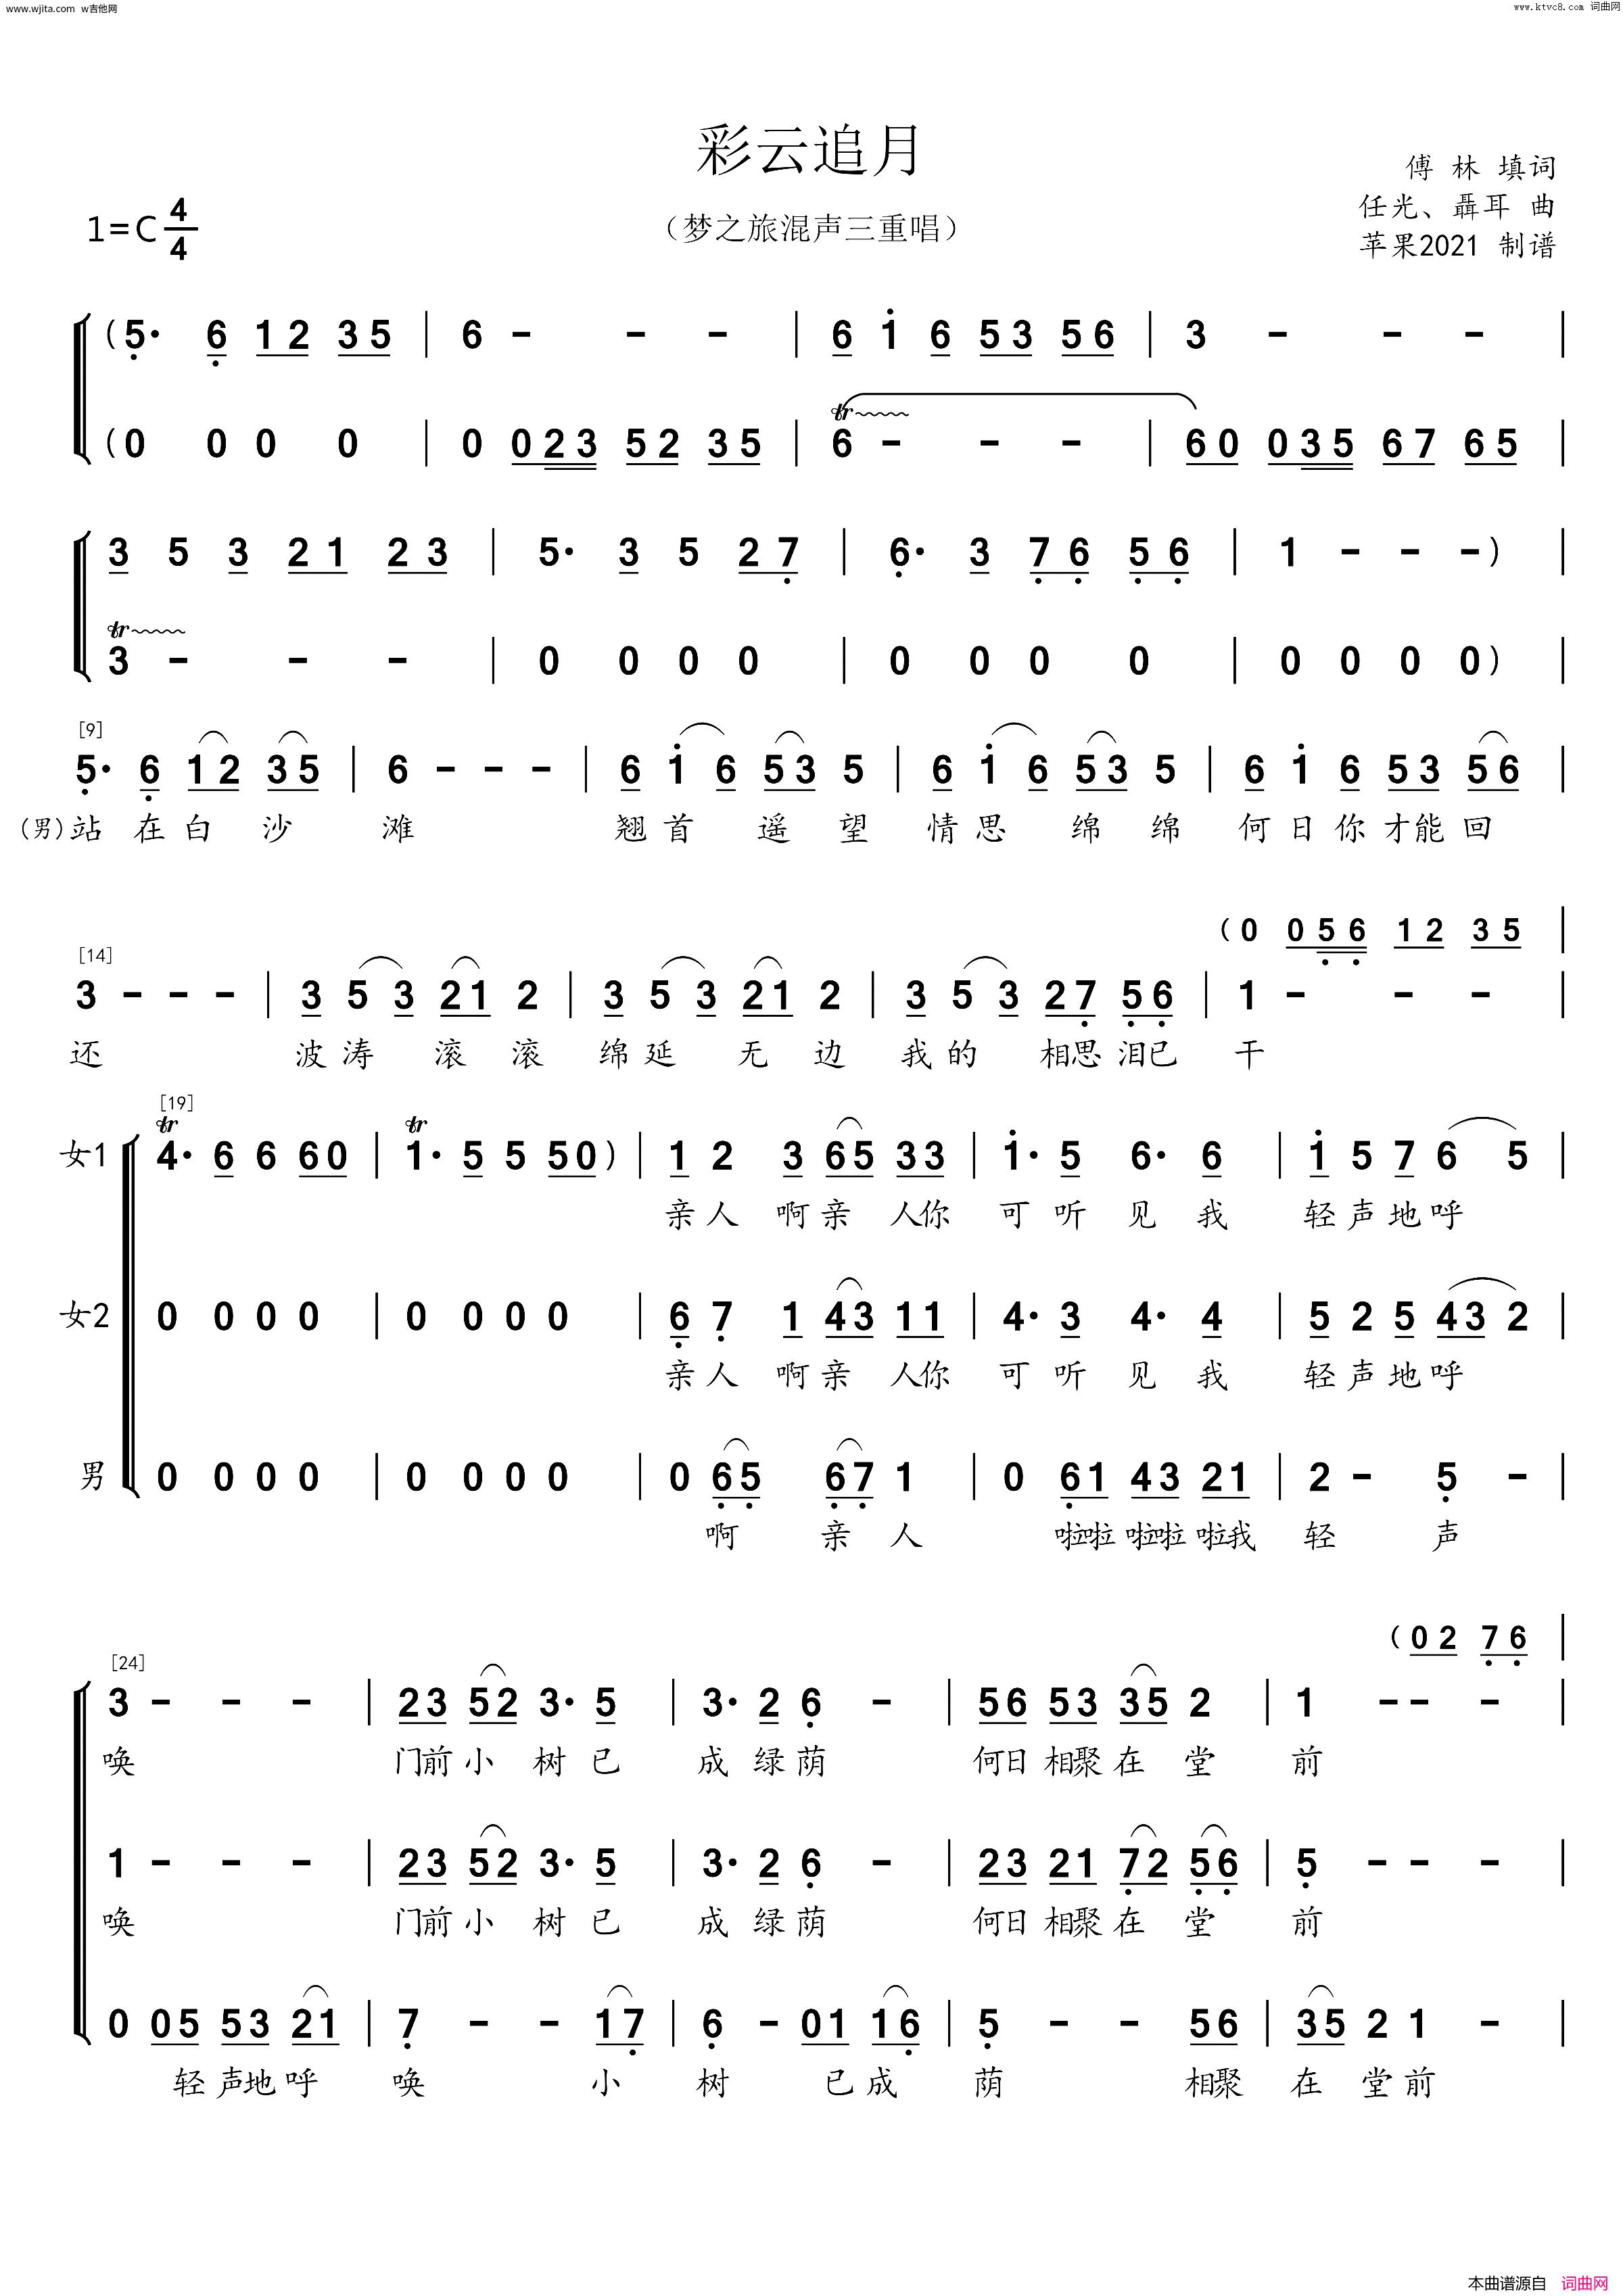 传统古筝名曲《彩云追月》小撮/分解和弦/变化音4和7-古筝曲谱 - 乐器学习网